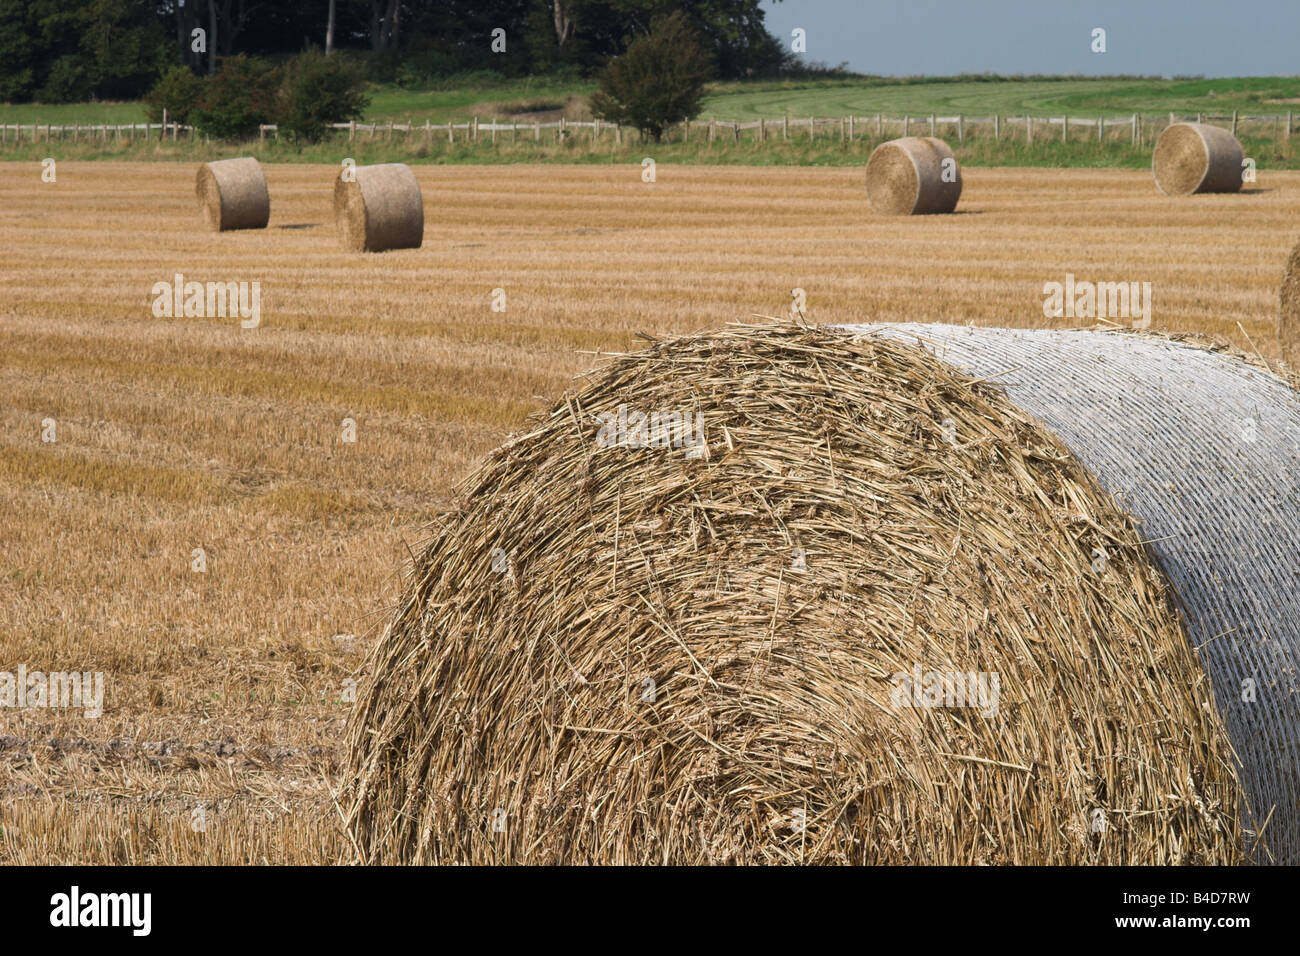 Bottes de foin dans un champ, les agriculteurs Wiltshire England, UK Banque D'Images